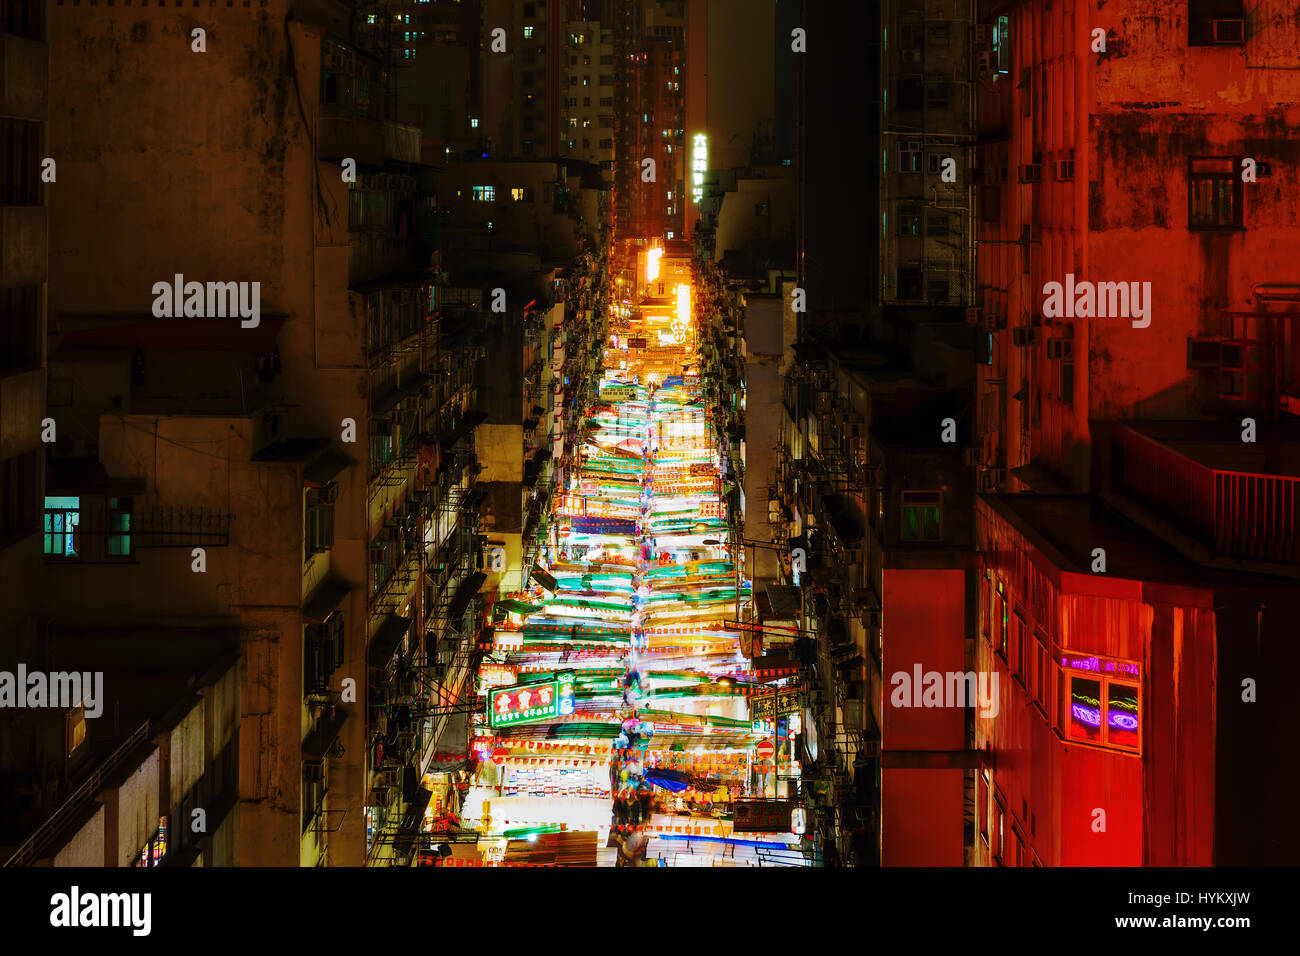 Hong Kong, Hong Kong - 14 Marzo 2017: vista aerea di Temple Street. La strada è conosciuta per il suo mercato notturno e come uno dei più trafficati Mercati delle pulci una Foto Stock